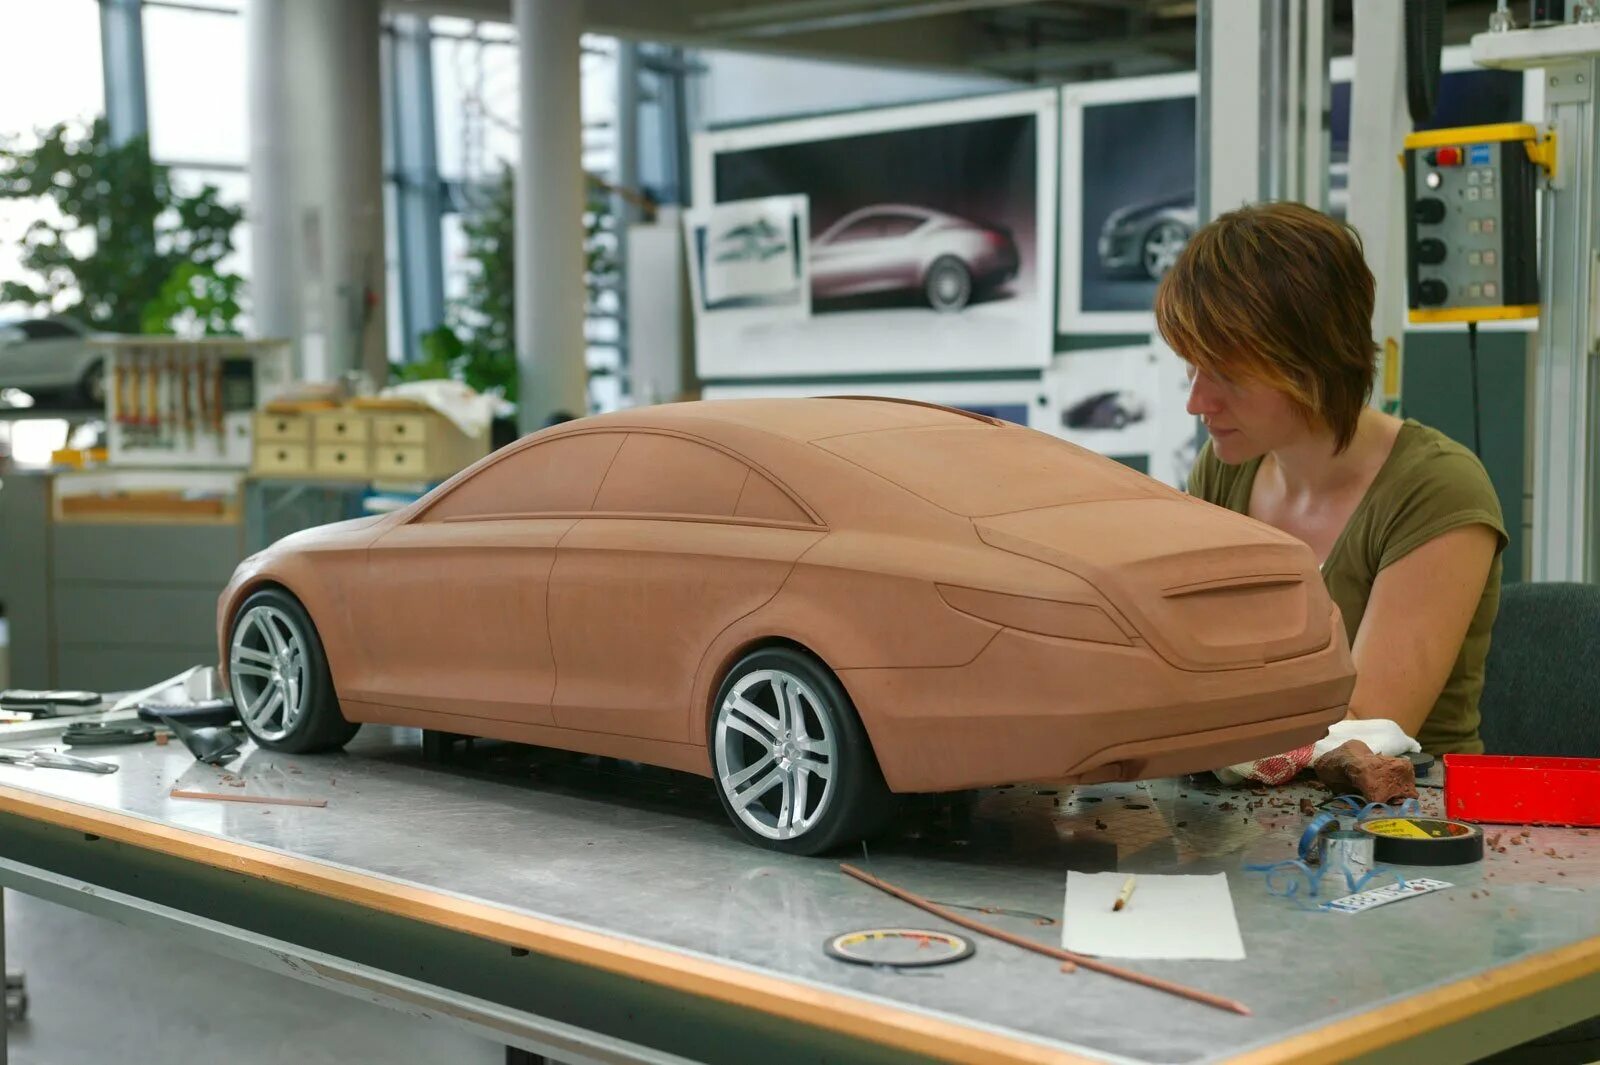 Как правильно делать машины. 3d моделирование в автопромышленности. Муляж автомобиля. Пластилиновые макеты автомобилей. Моделирование автомобилей.